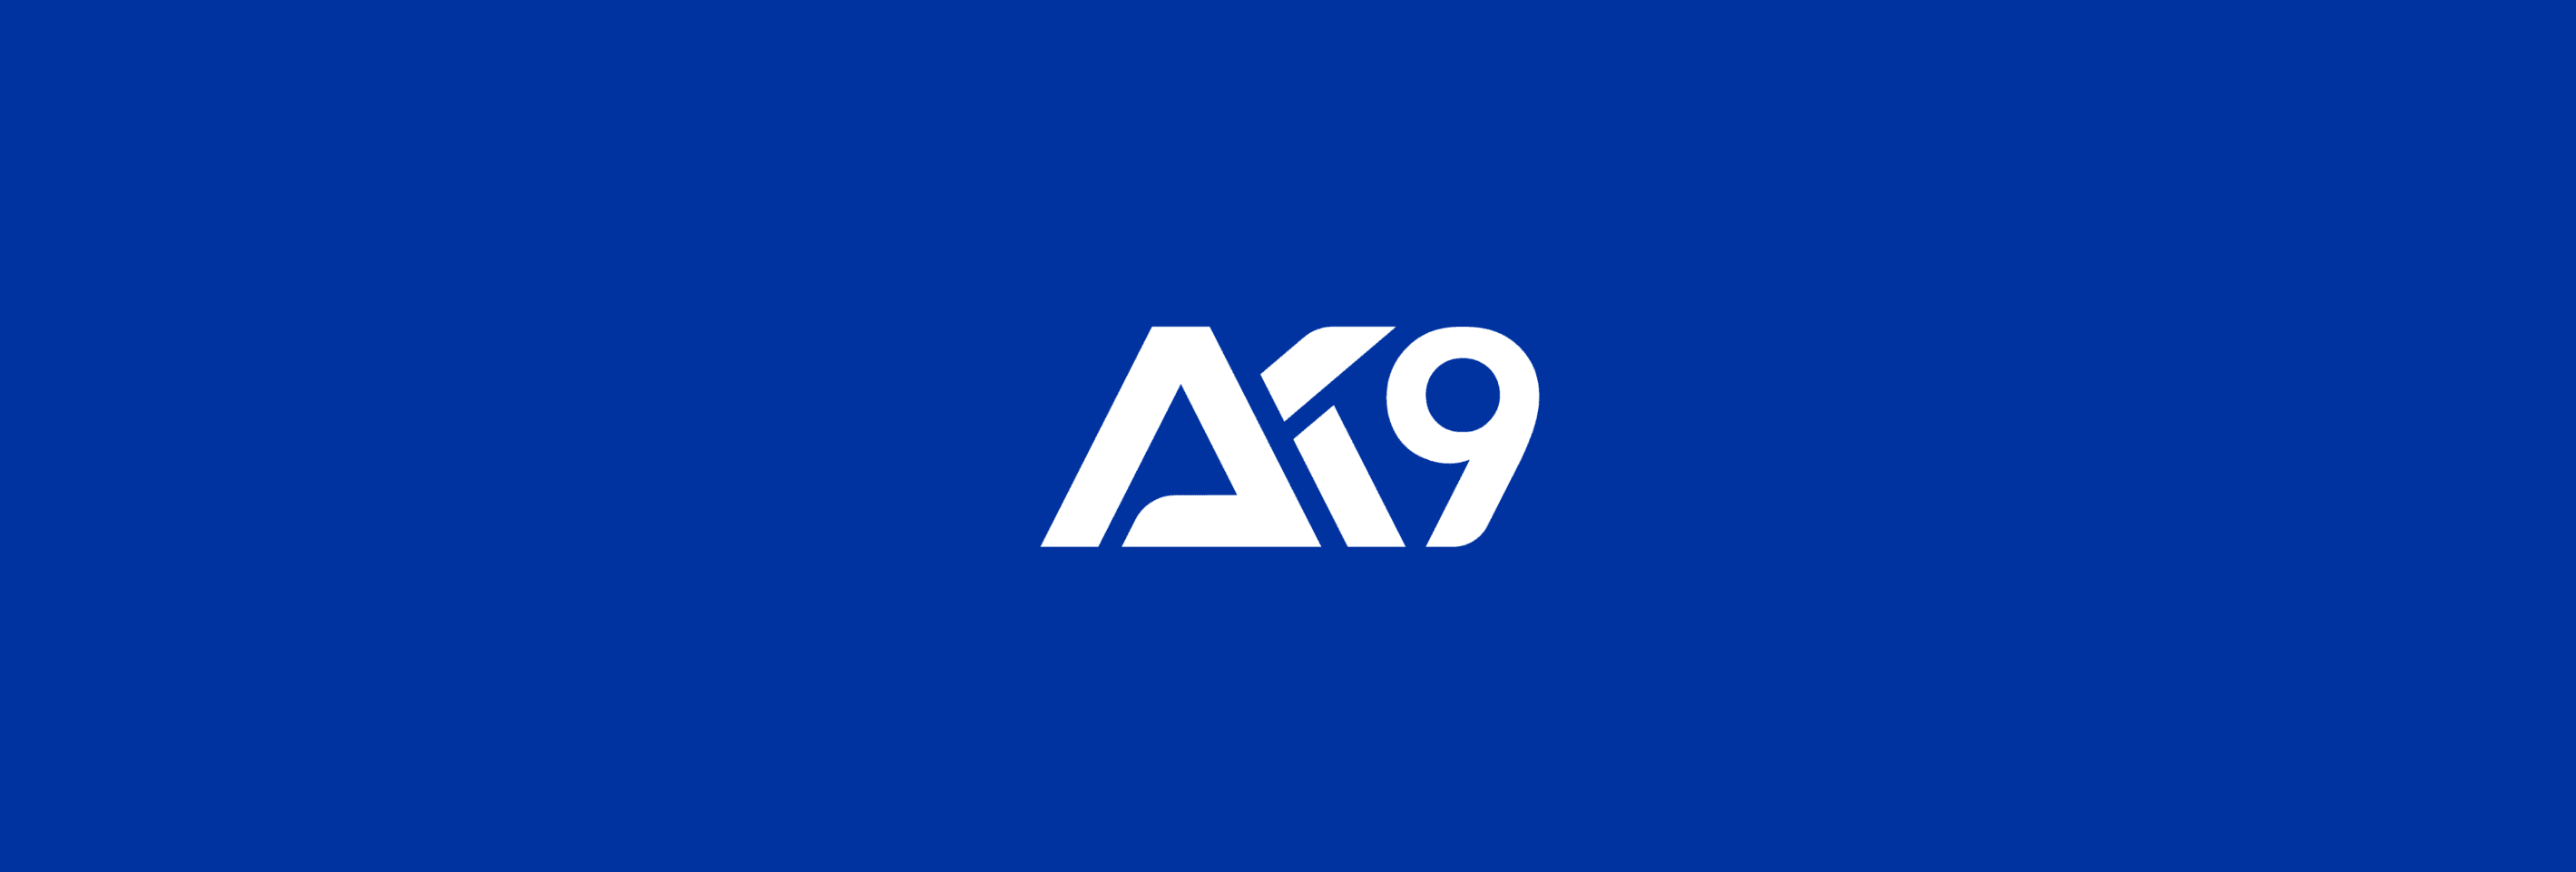 AK9NFT-Vault banner